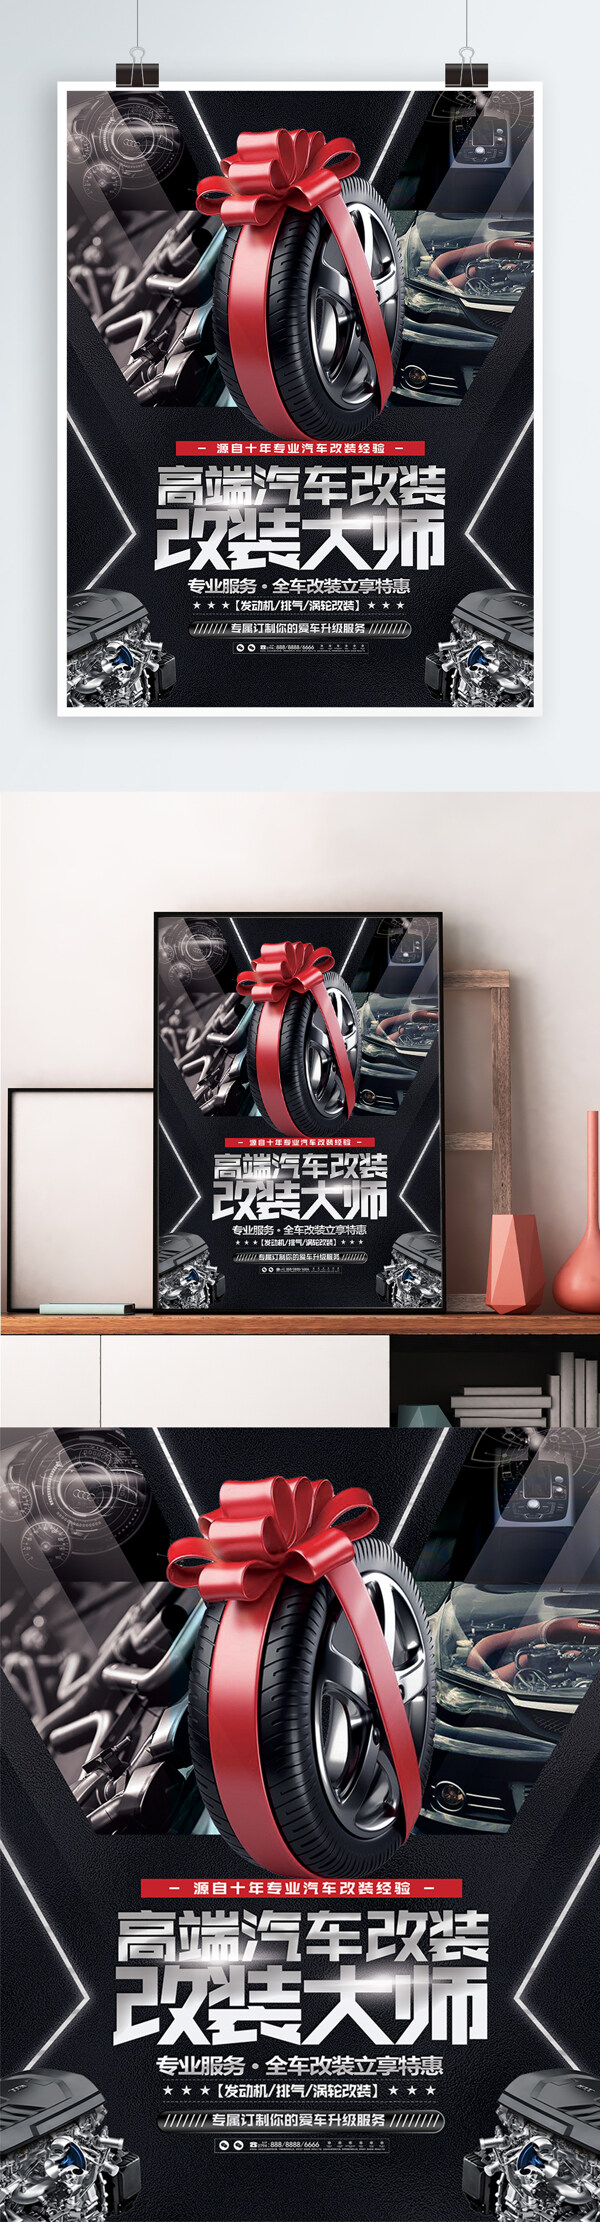 酷炫简约汽车改装宣传促销海报展板